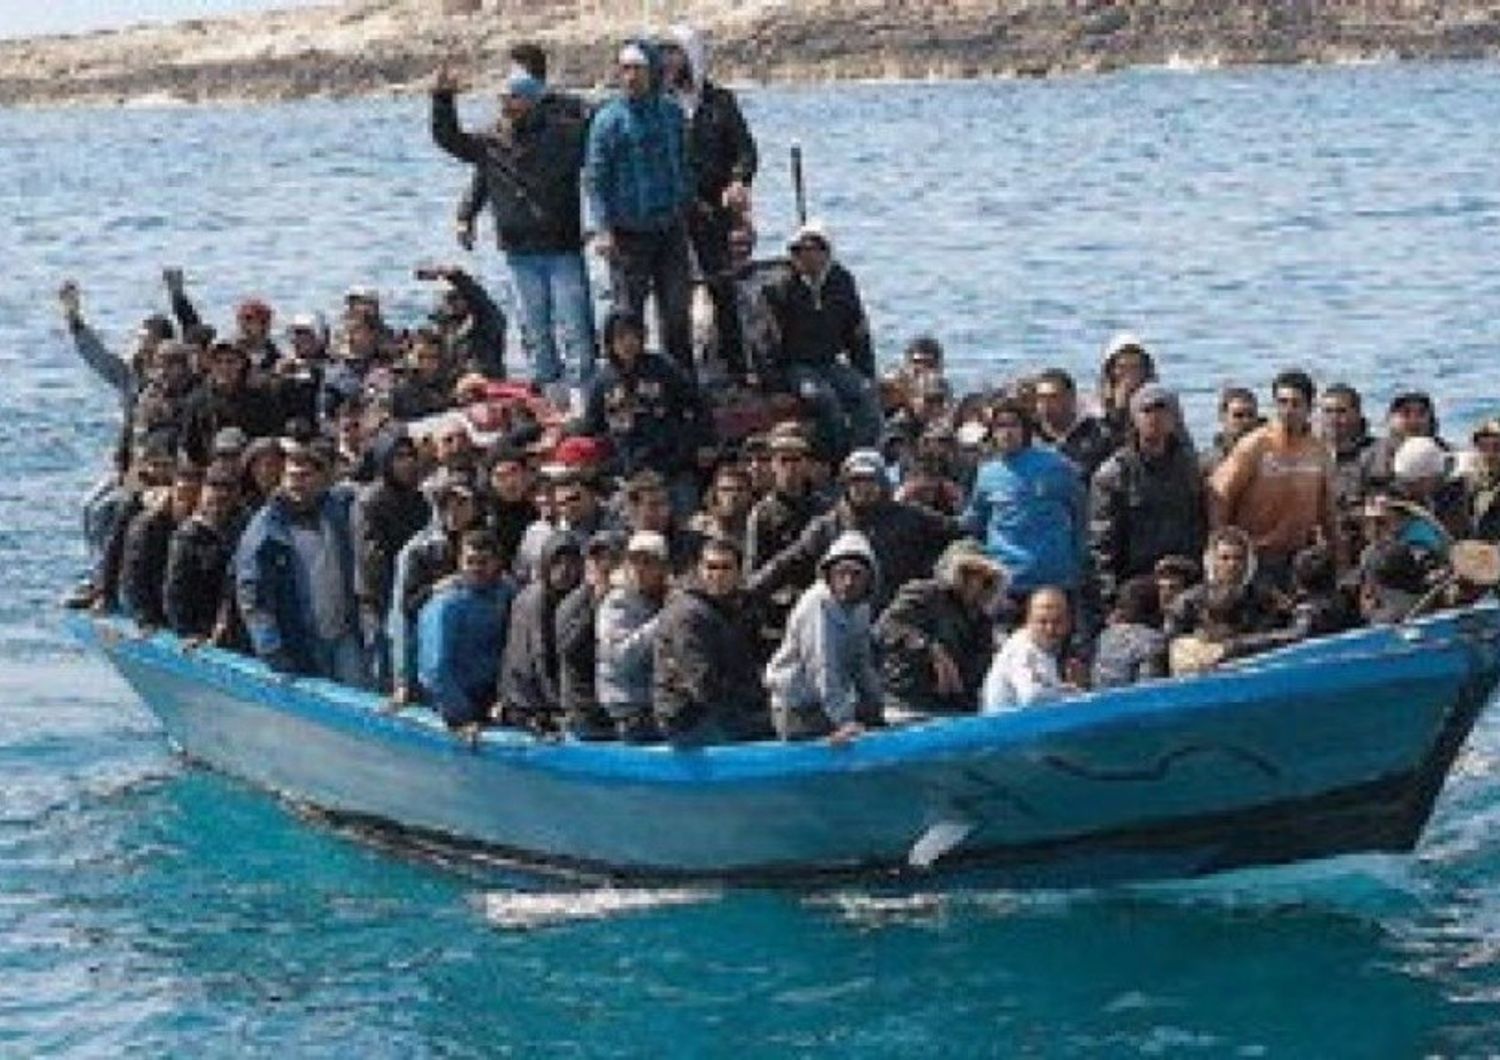 Immigrati: Ue fa quadrato su agenda ma la Libia minaccia, "pronti al fuoco"